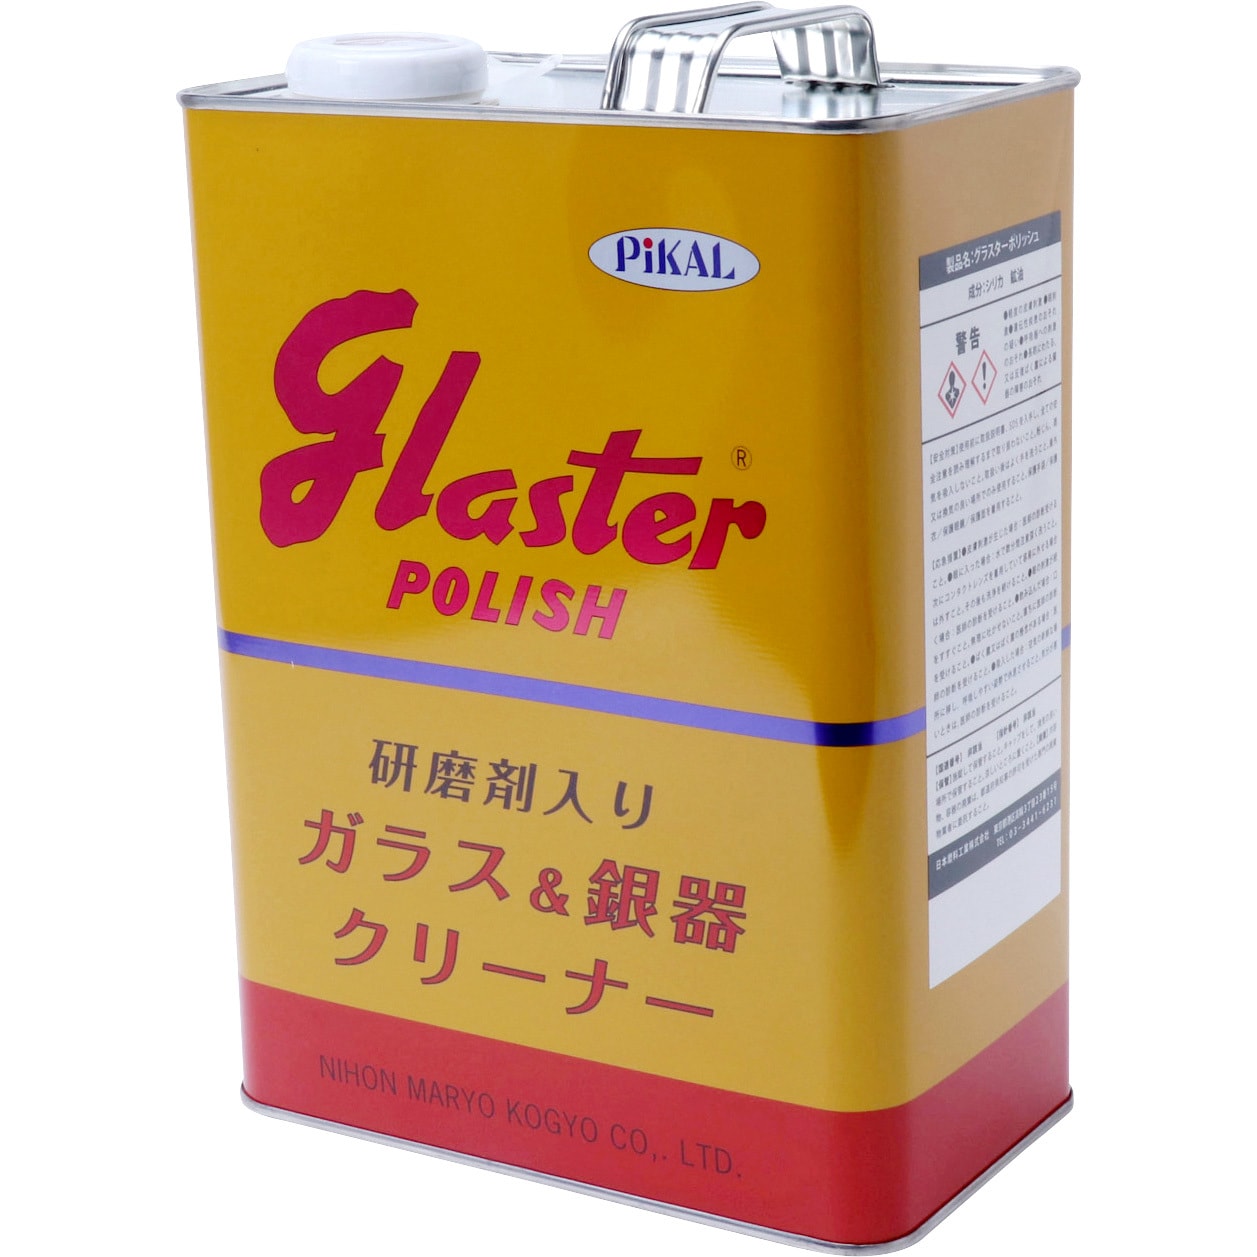 ピカール グラスターポリッシュ 1缶 4kg 日本磨料工業 通販サイトmonotaro